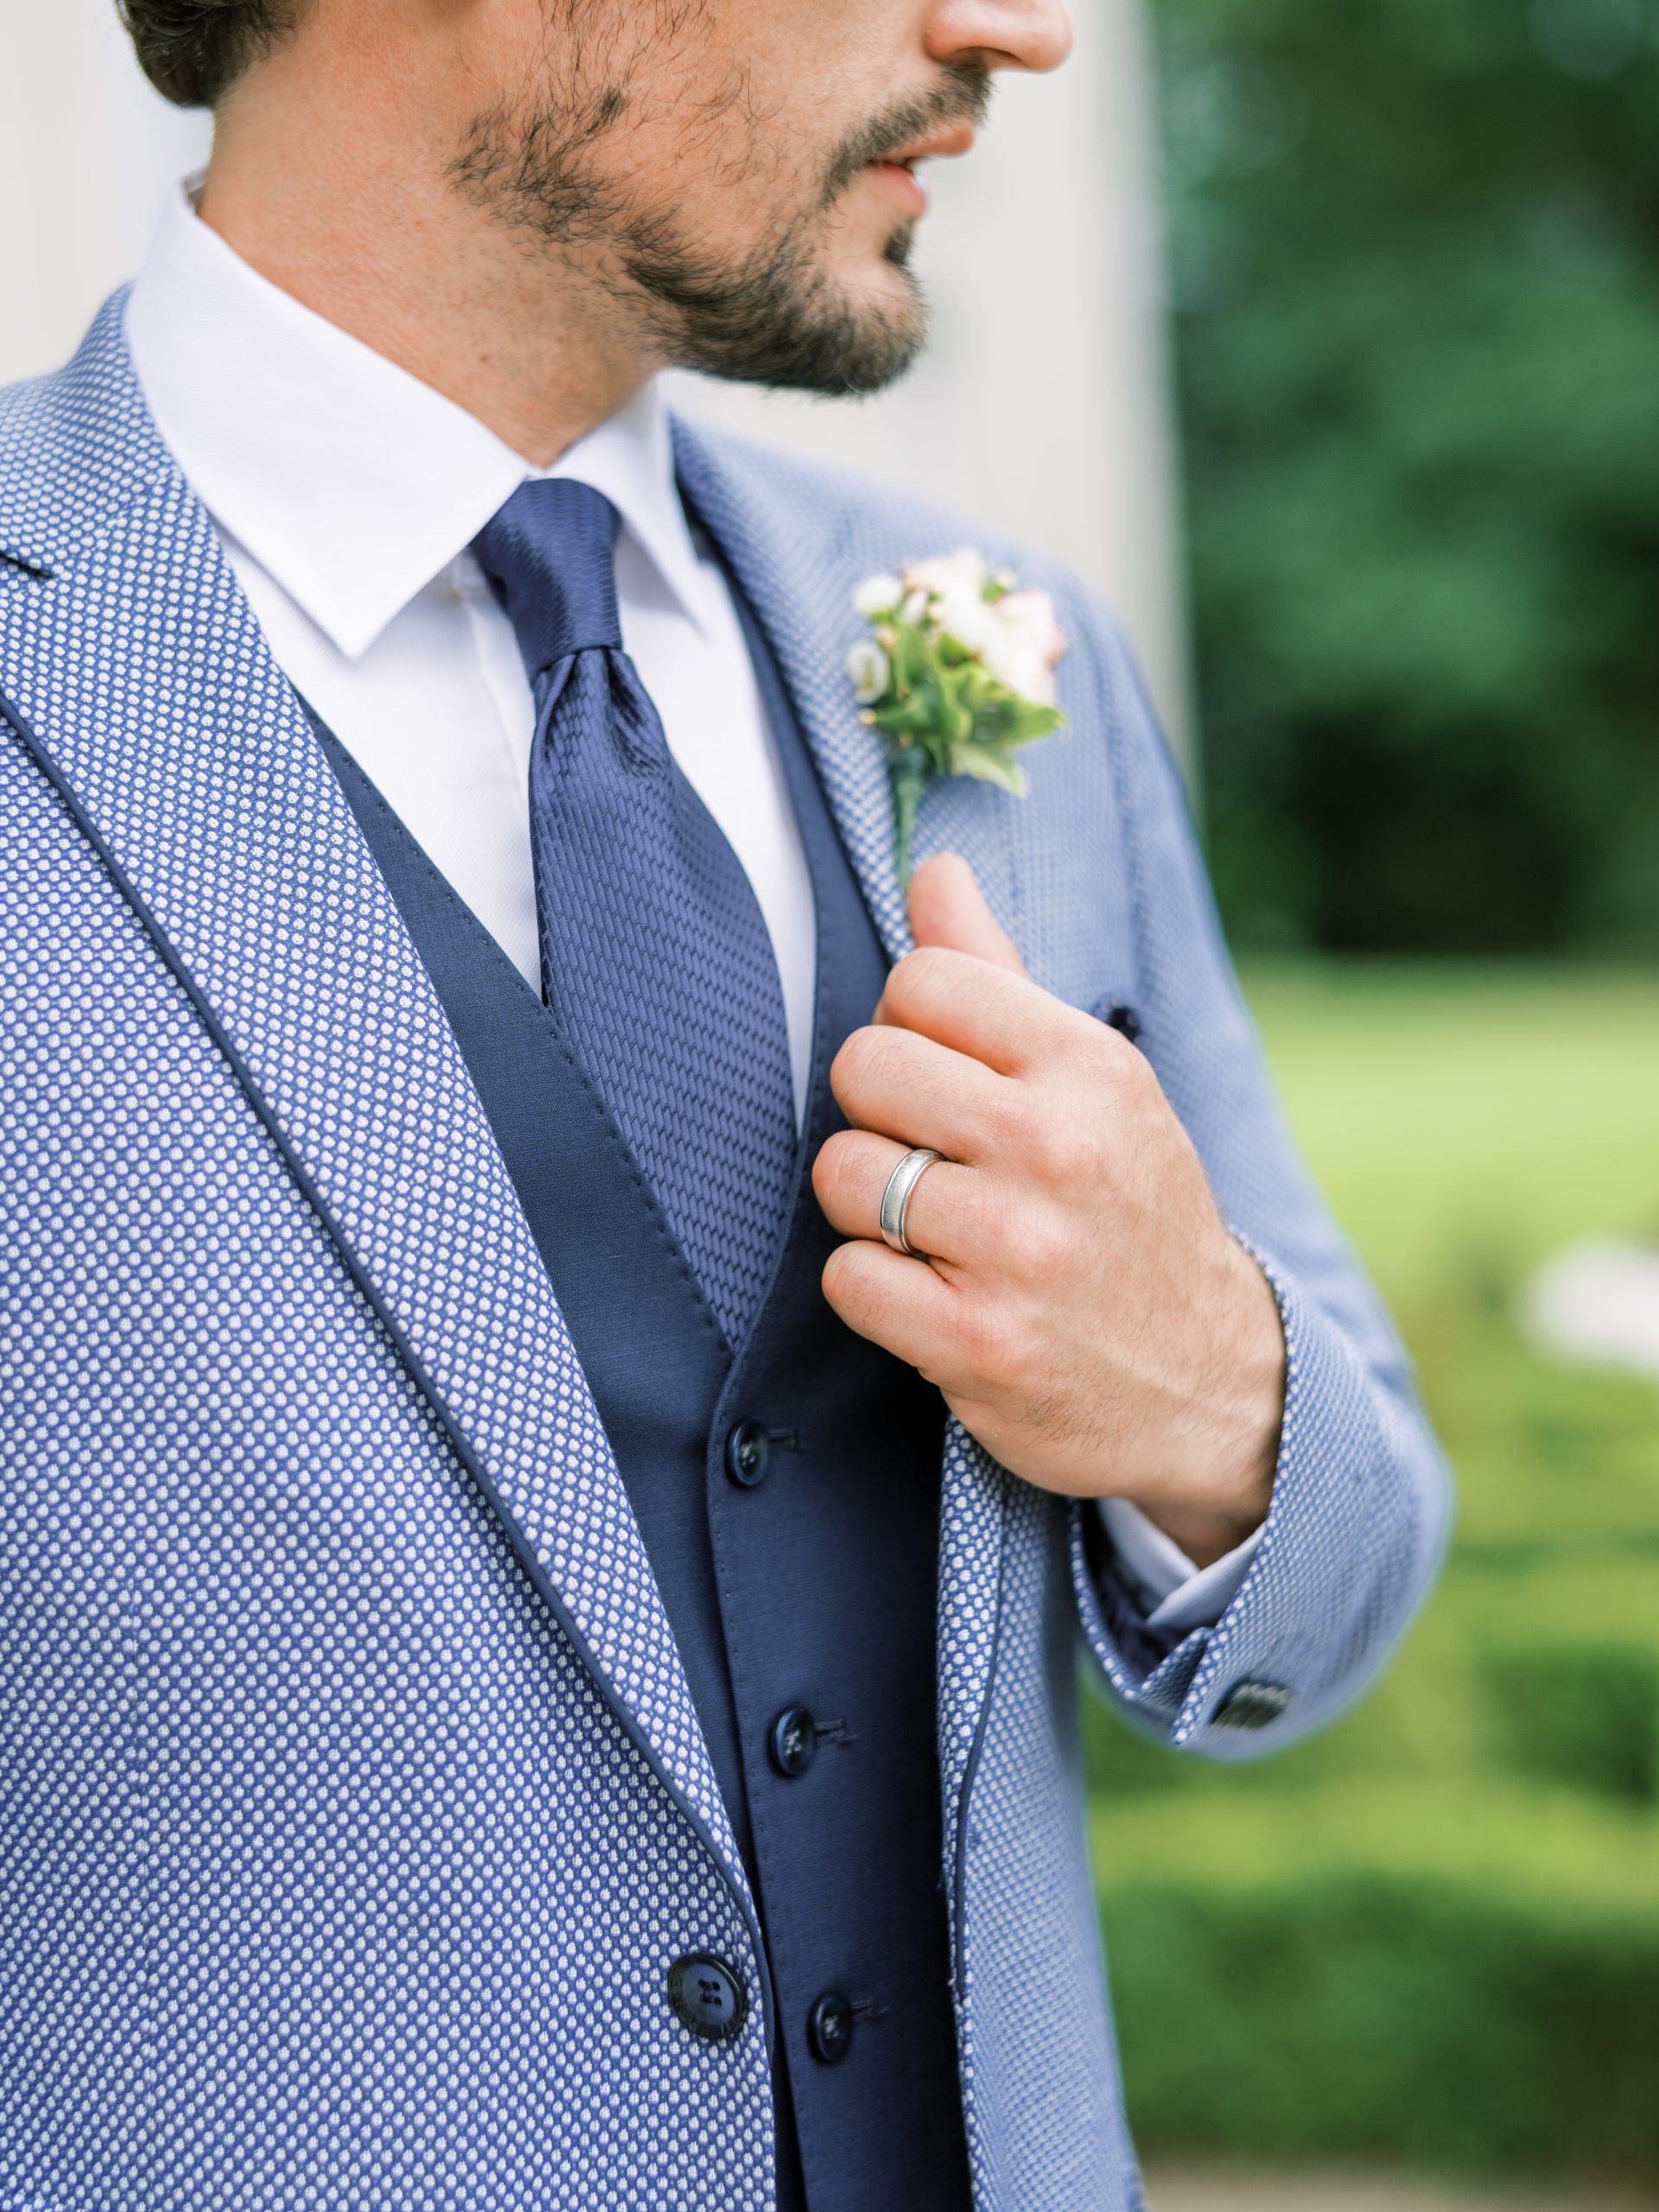 Groomsmen Mens Skopes Suit Wedding Best Man Groom